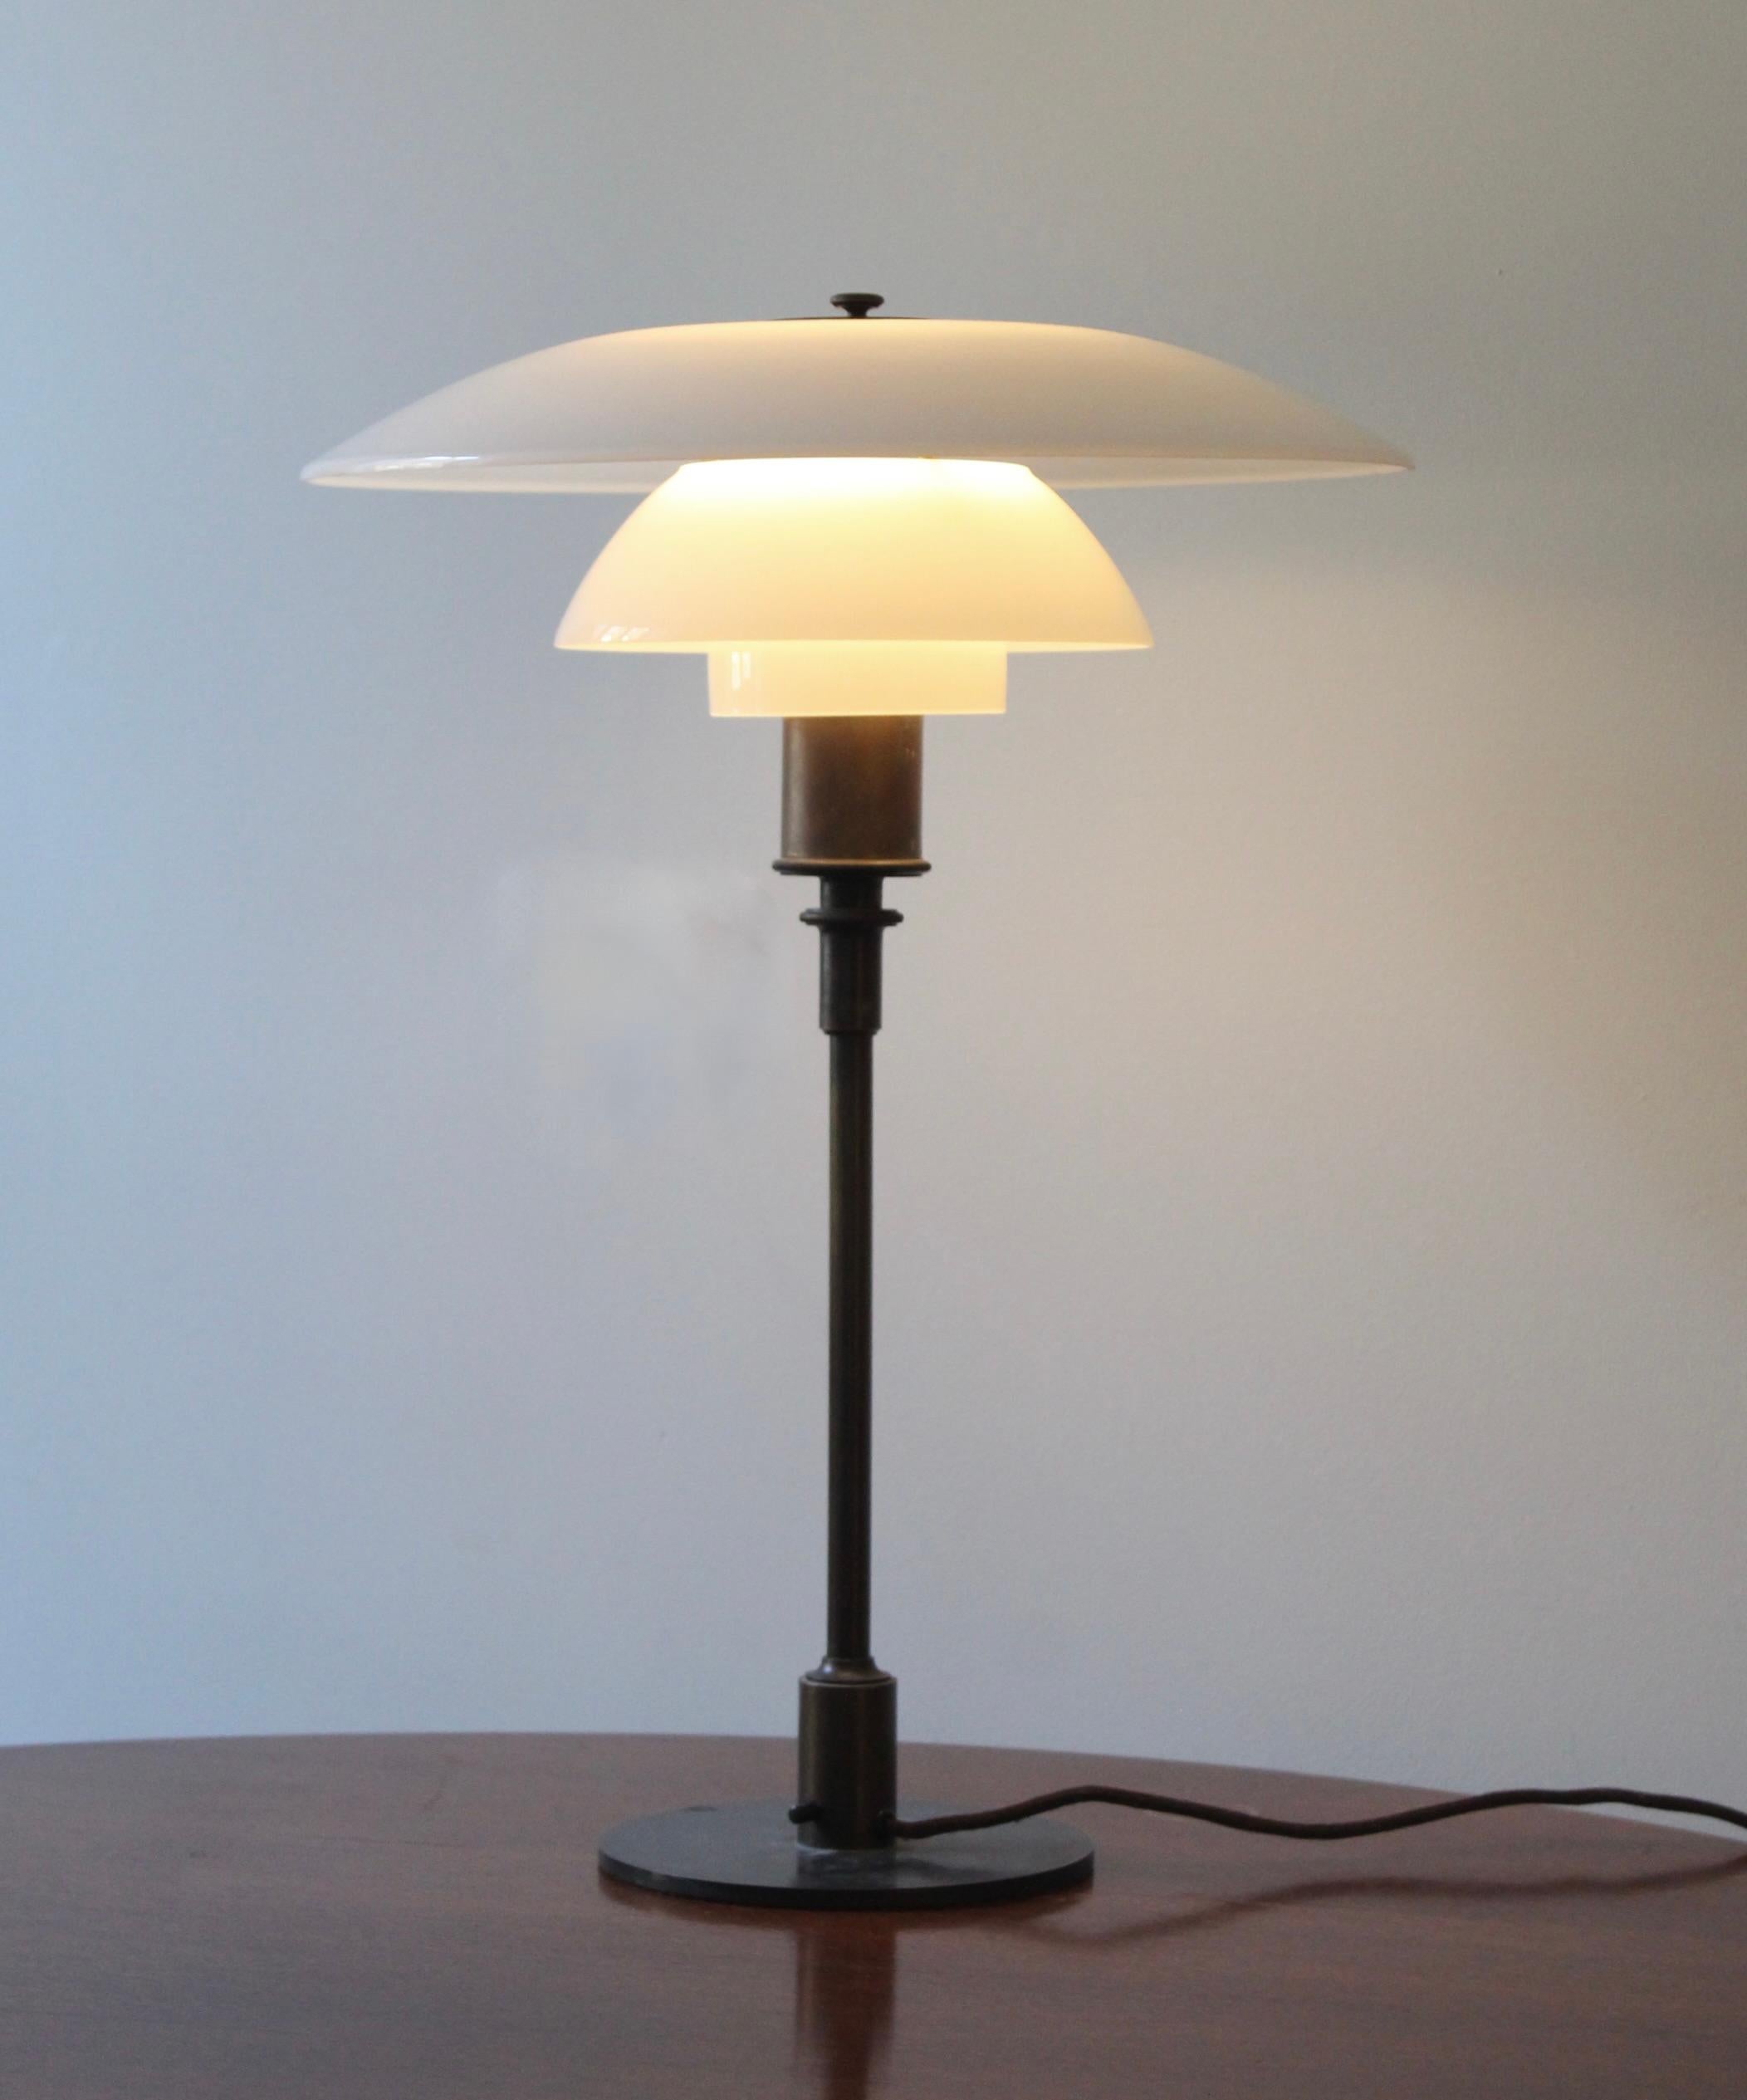 Un exemple de production précoce de la lampe de table 4/3 emblématique de Poul Henningsen, produite par Louis Poulsen, Danemark, c. 1927.